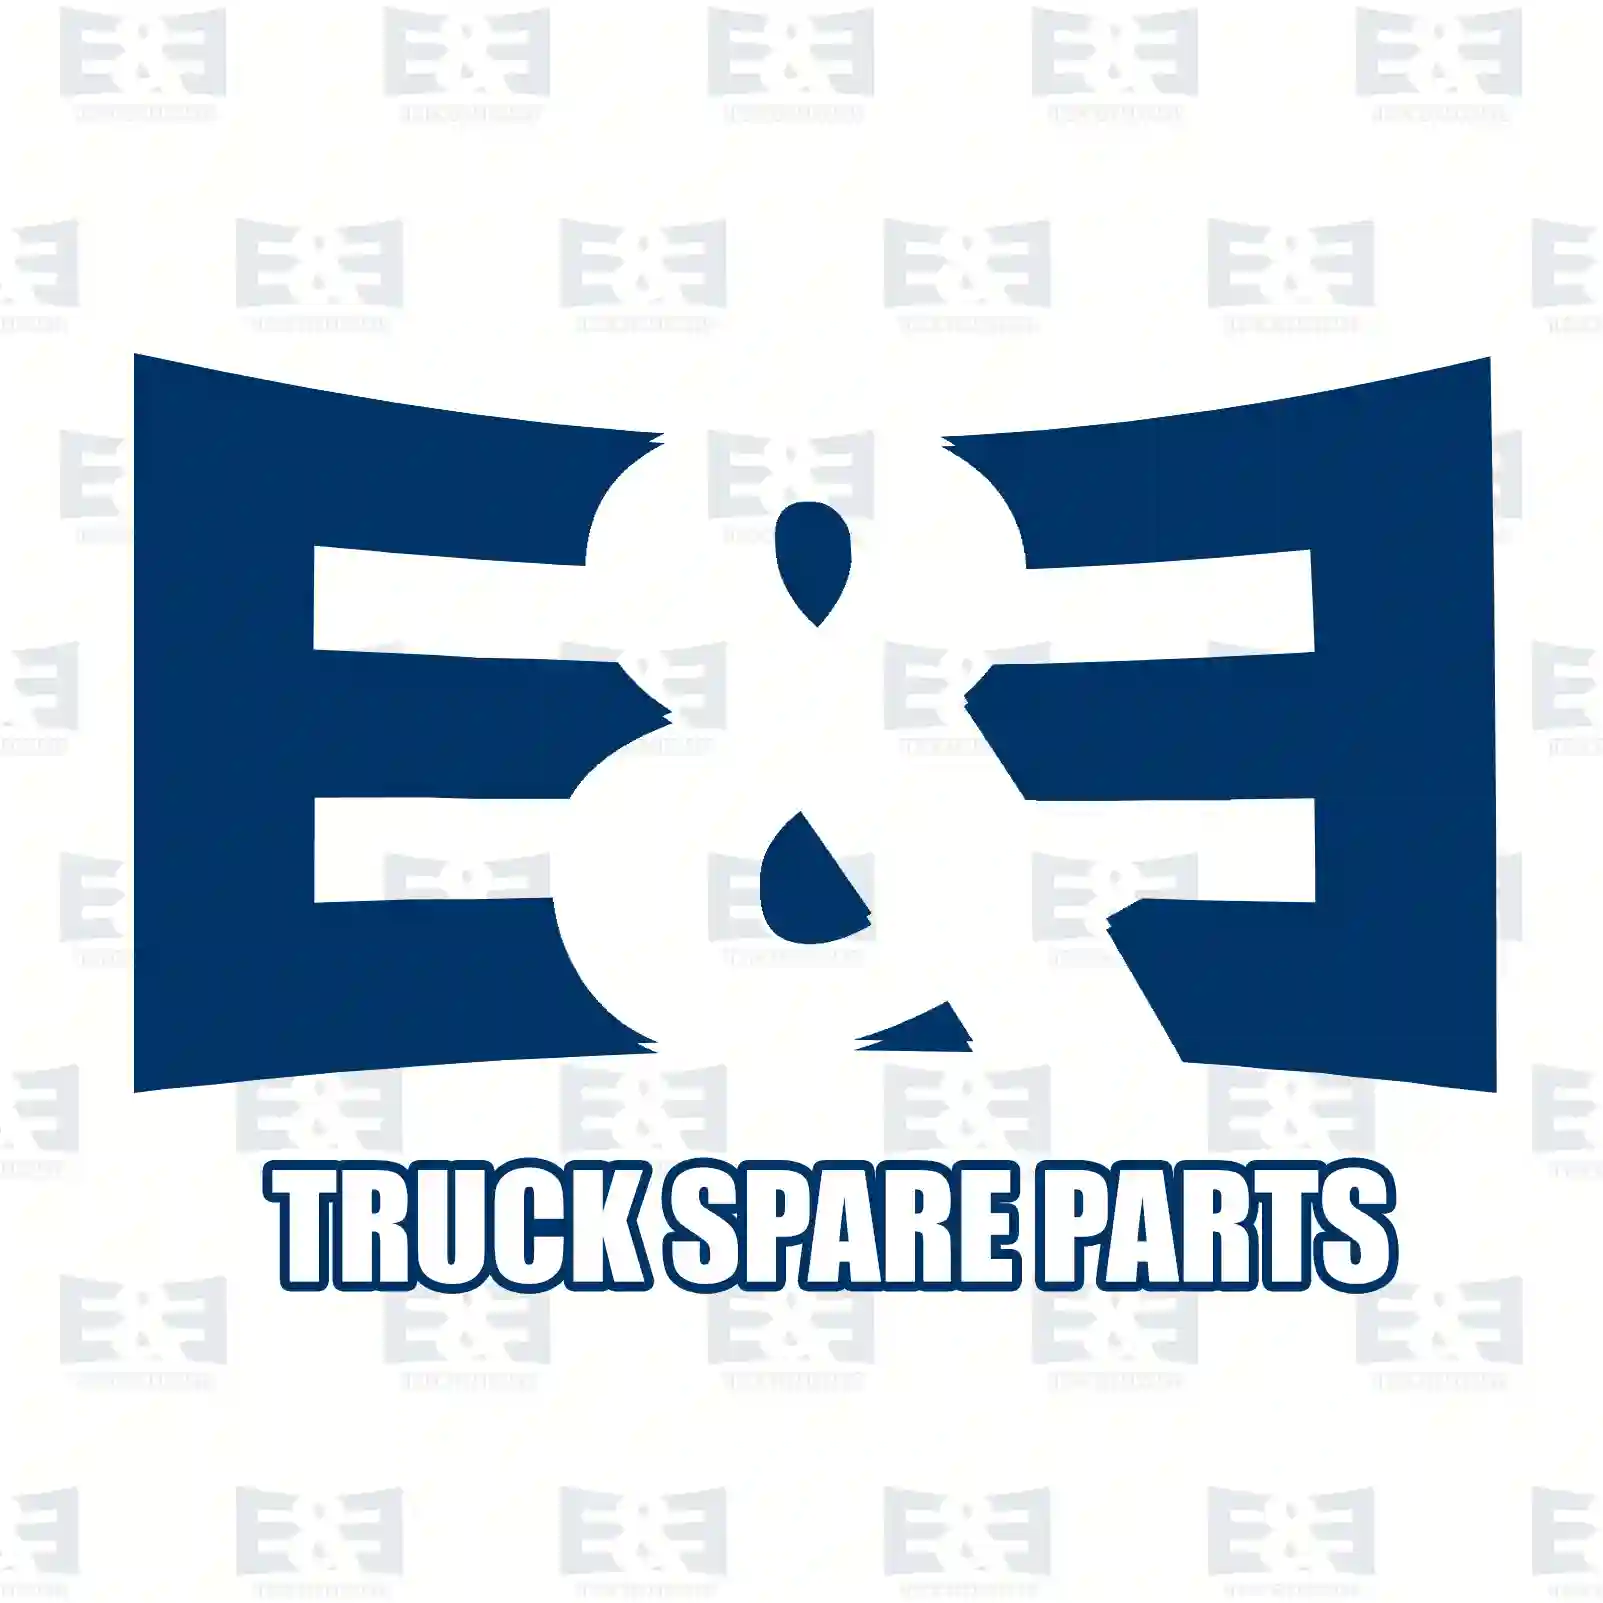 4-circuit-protection valve, 2E2295994, 0004205771, , , , , , , , , , ||  2E2295994 E&E Truck Spare Parts | Truck Spare Parts, Auotomotive Spare Parts 4-circuit-protection valve, 2E2295994, 0004205771, , , , , , , , , , ||  2E2295994 E&E Truck Spare Parts | Truck Spare Parts, Auotomotive Spare Parts